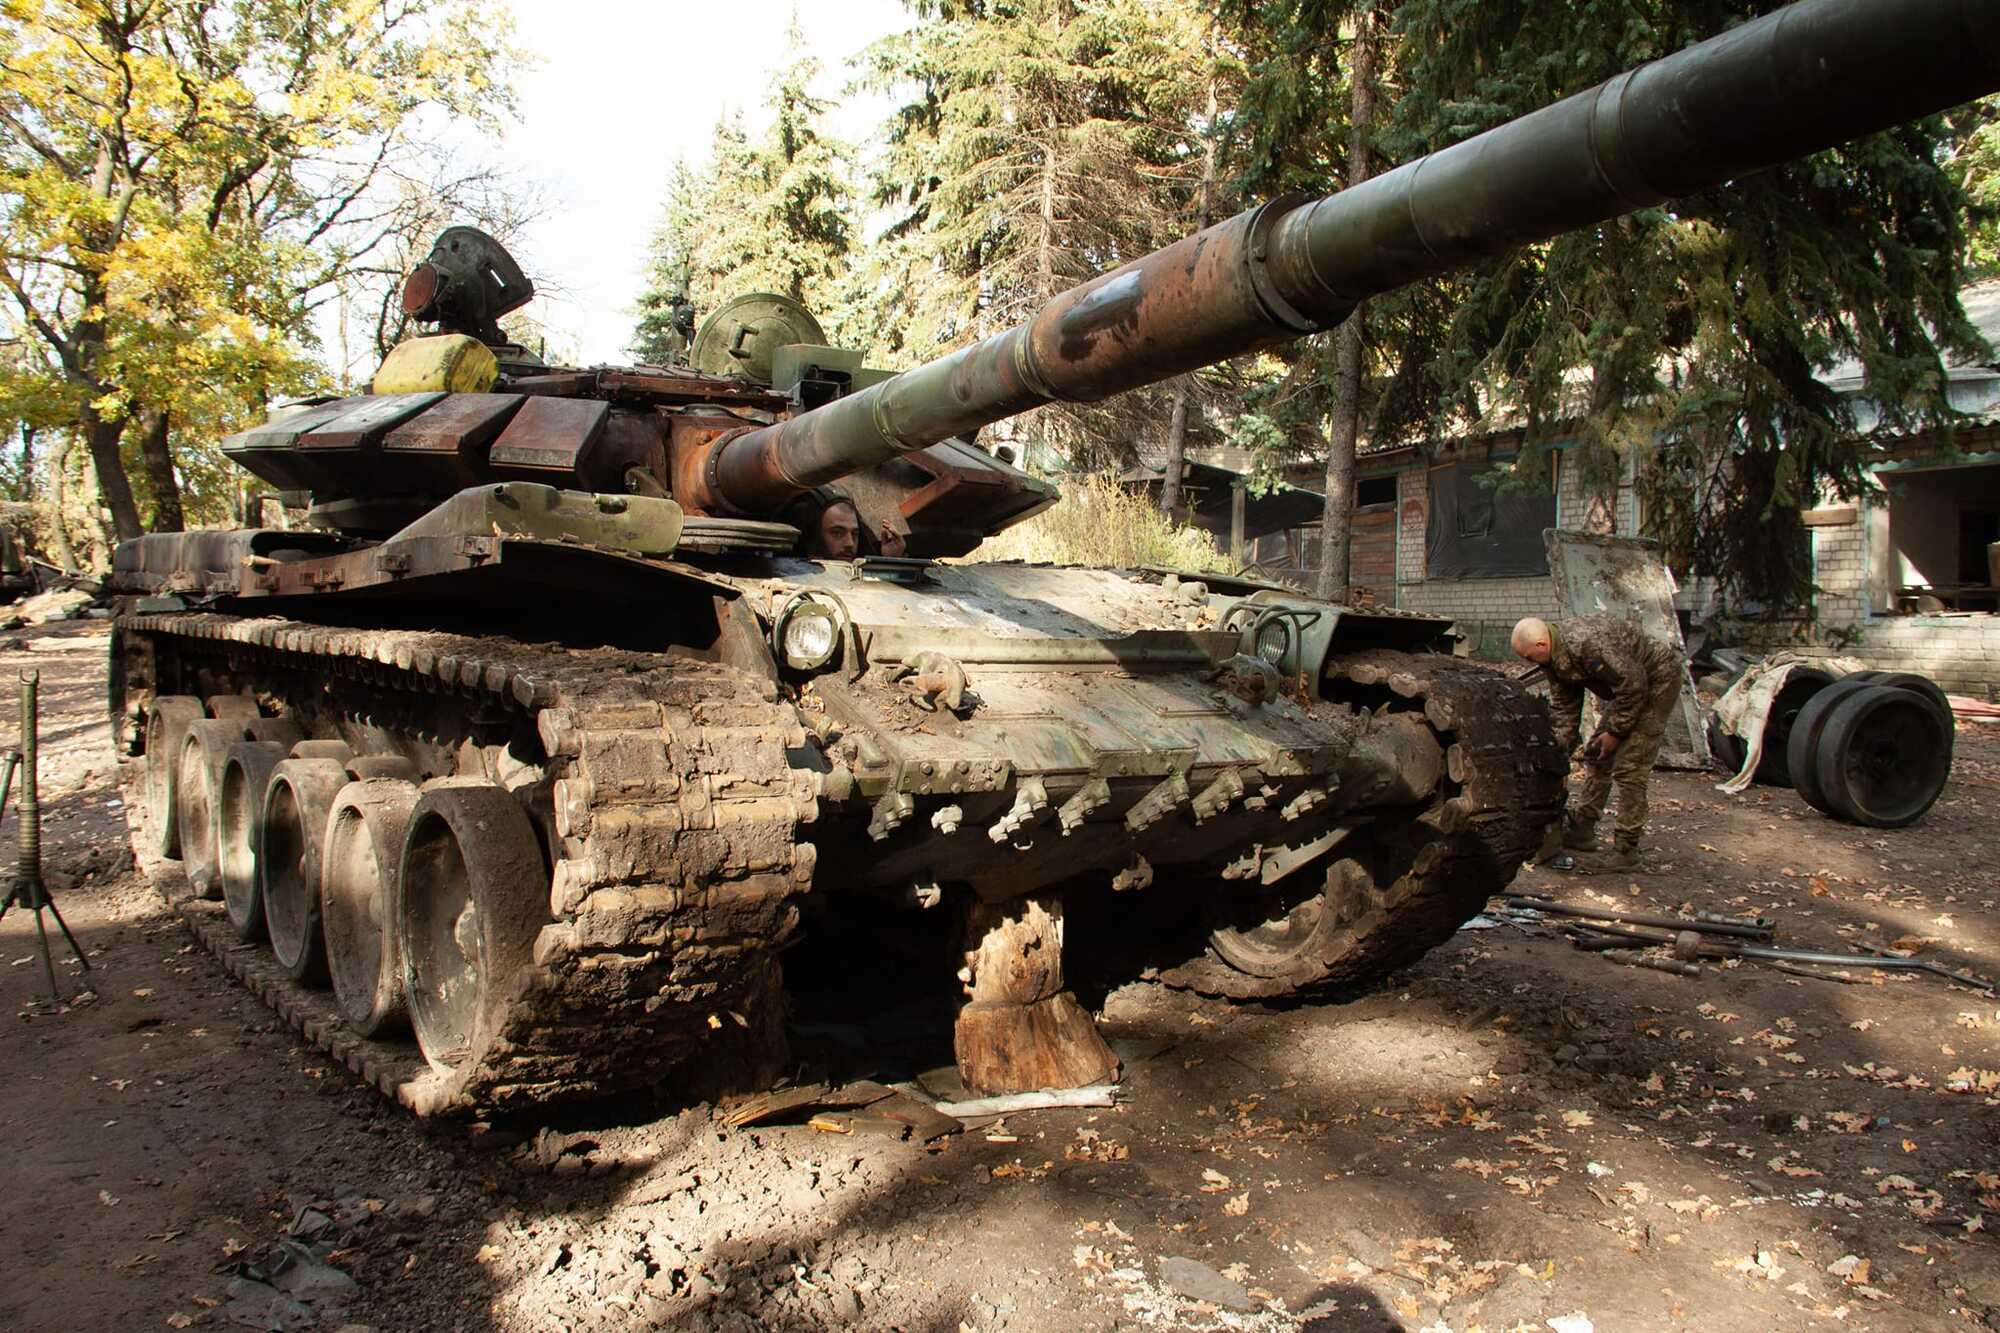 Російський ленд-ліз у дії: українські воїни захопили танк Т-72Б3, який кинули окупанти. Фото трофея